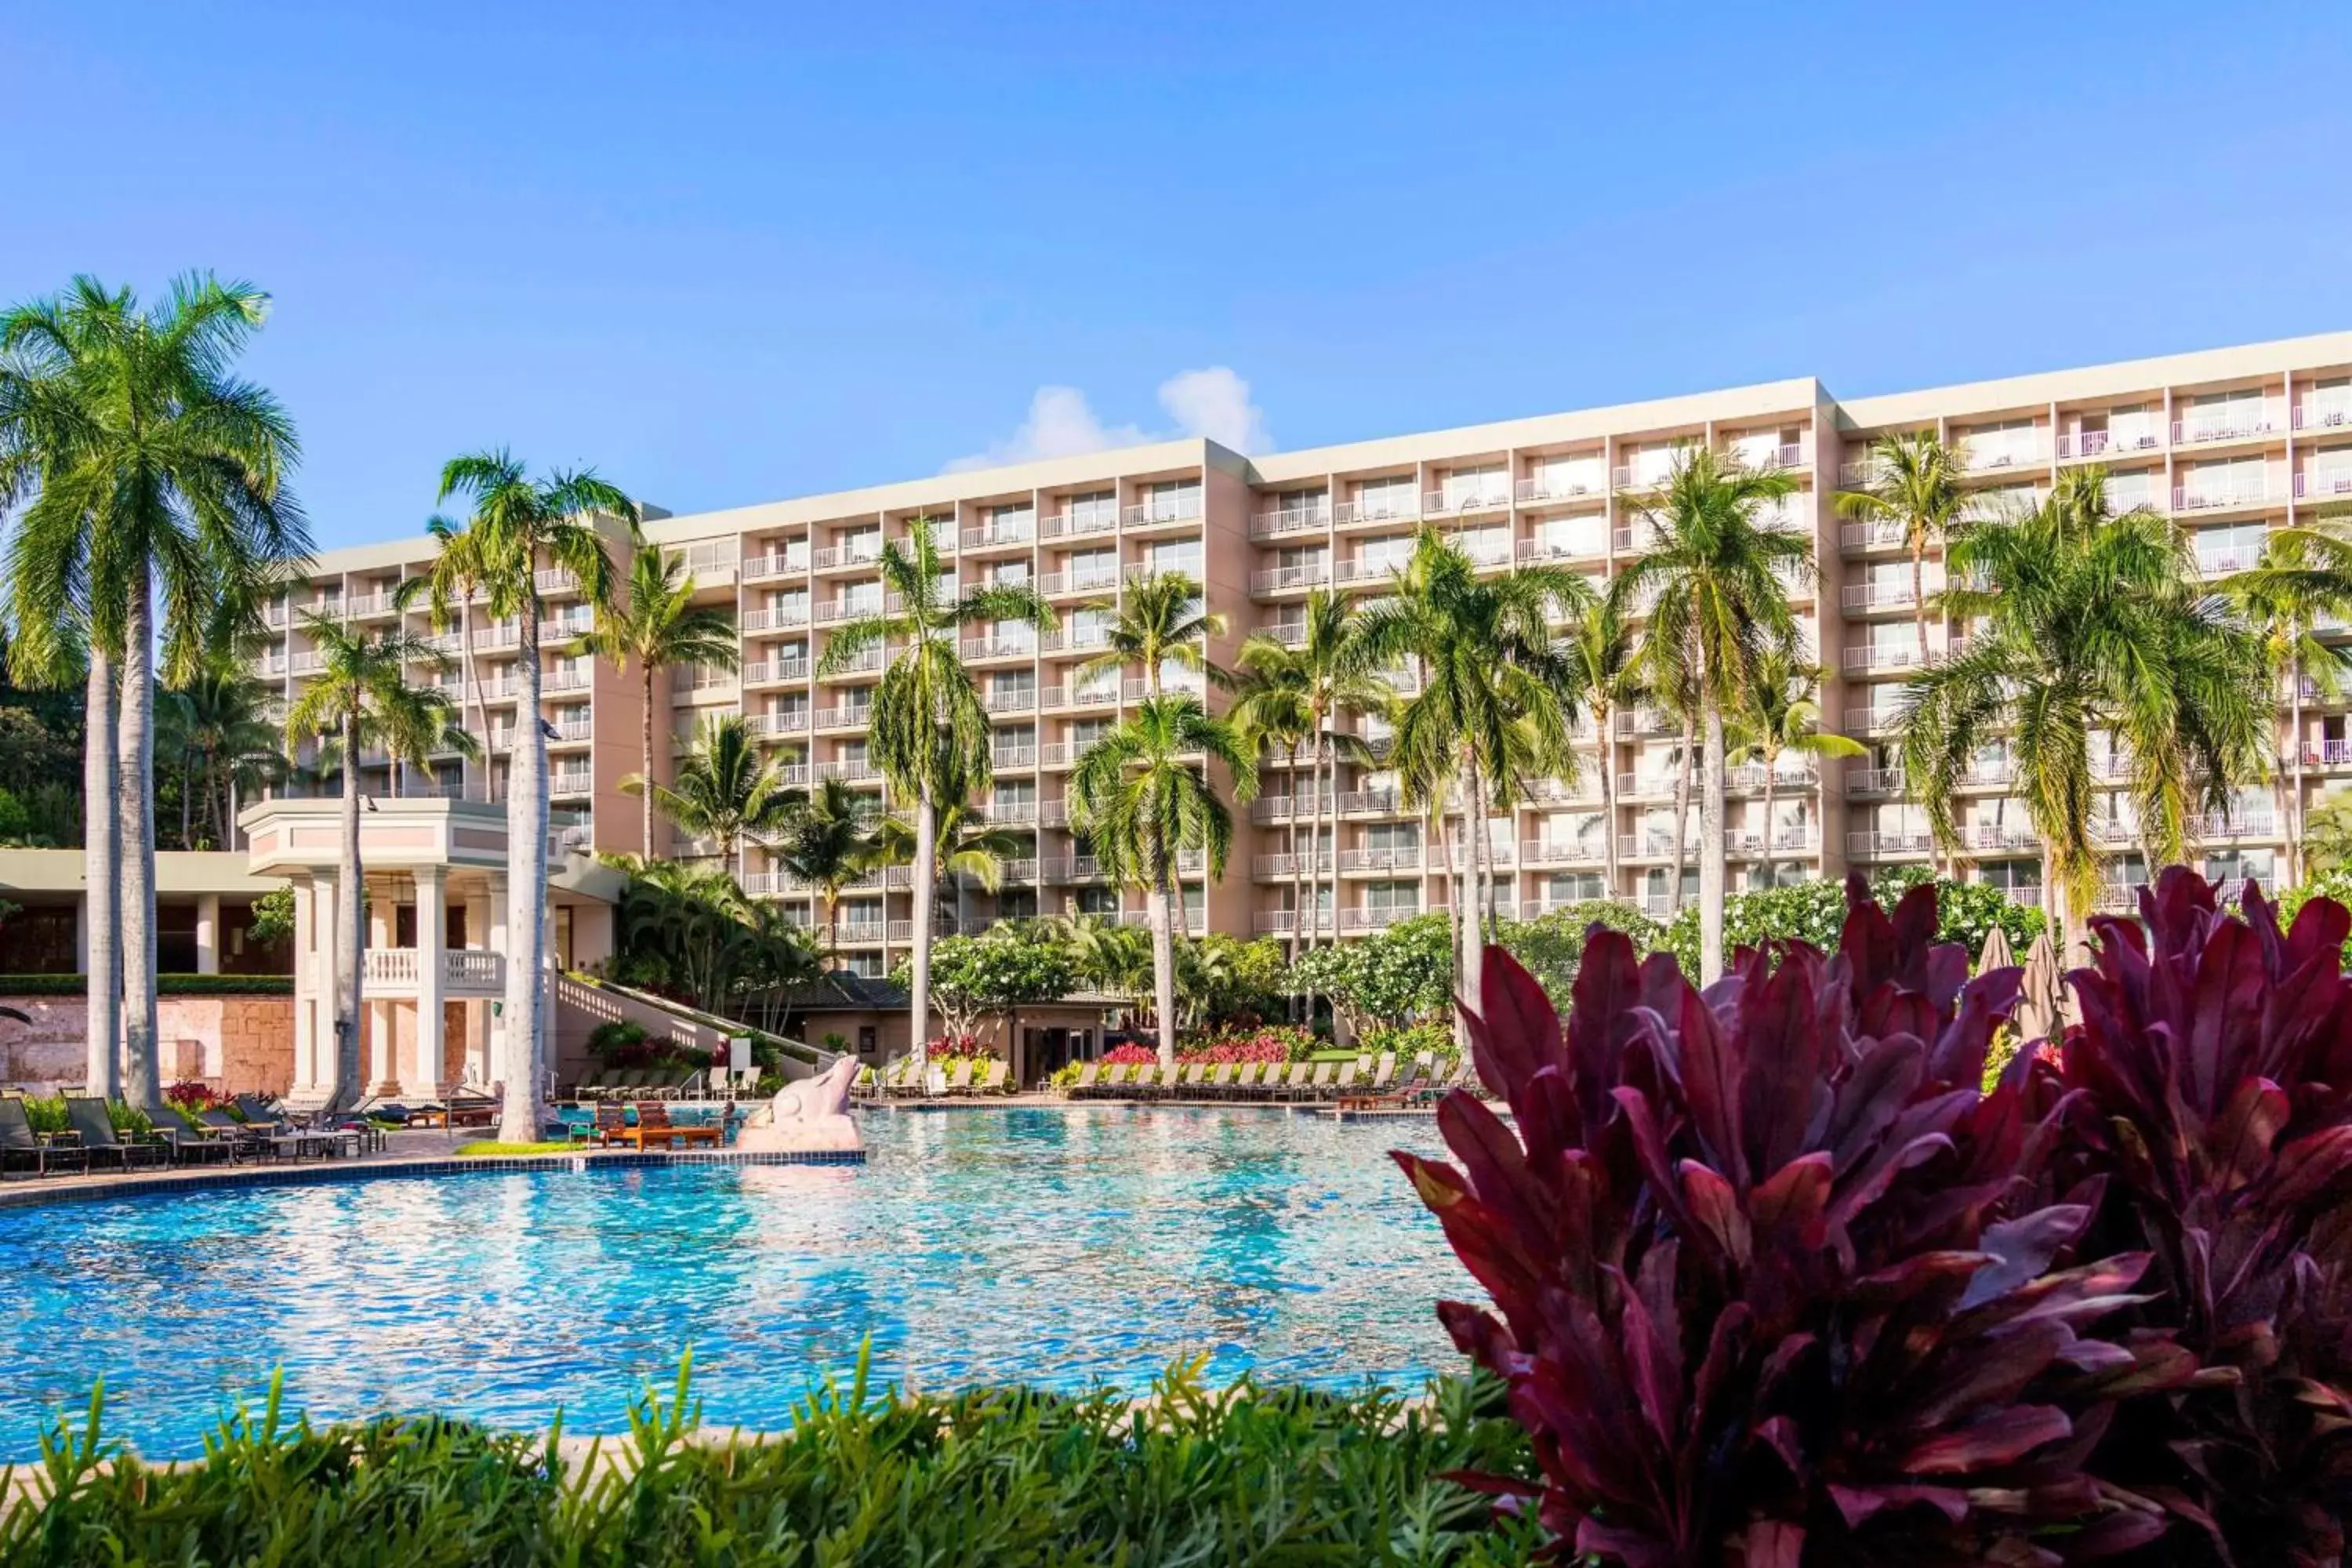 Property building, Swimming Pool in The Royal Sonesta Kauai Resort Lihue